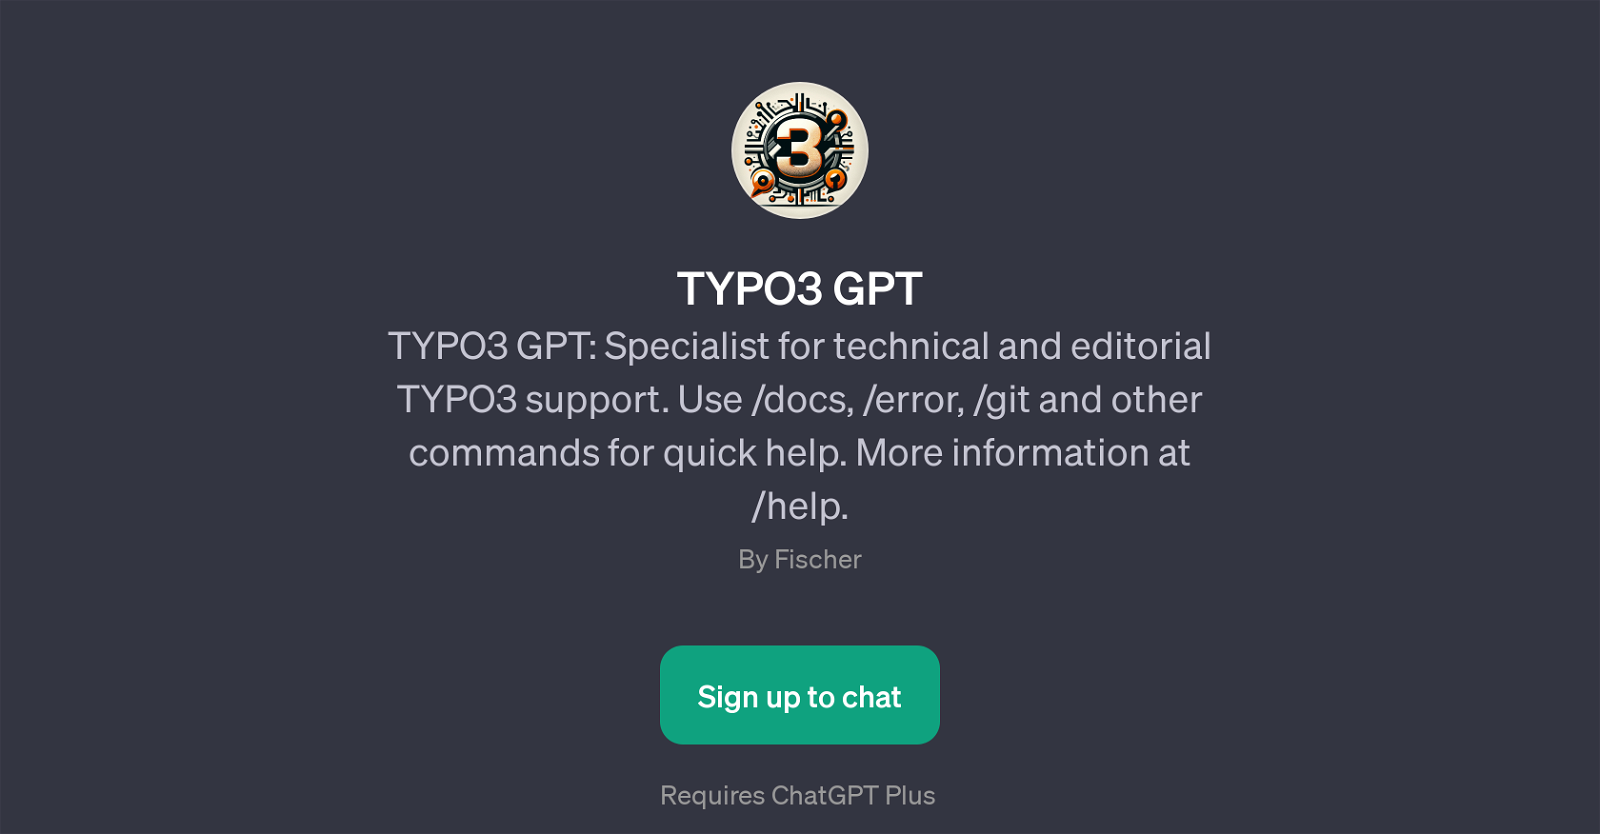 TYPO3 GPT website